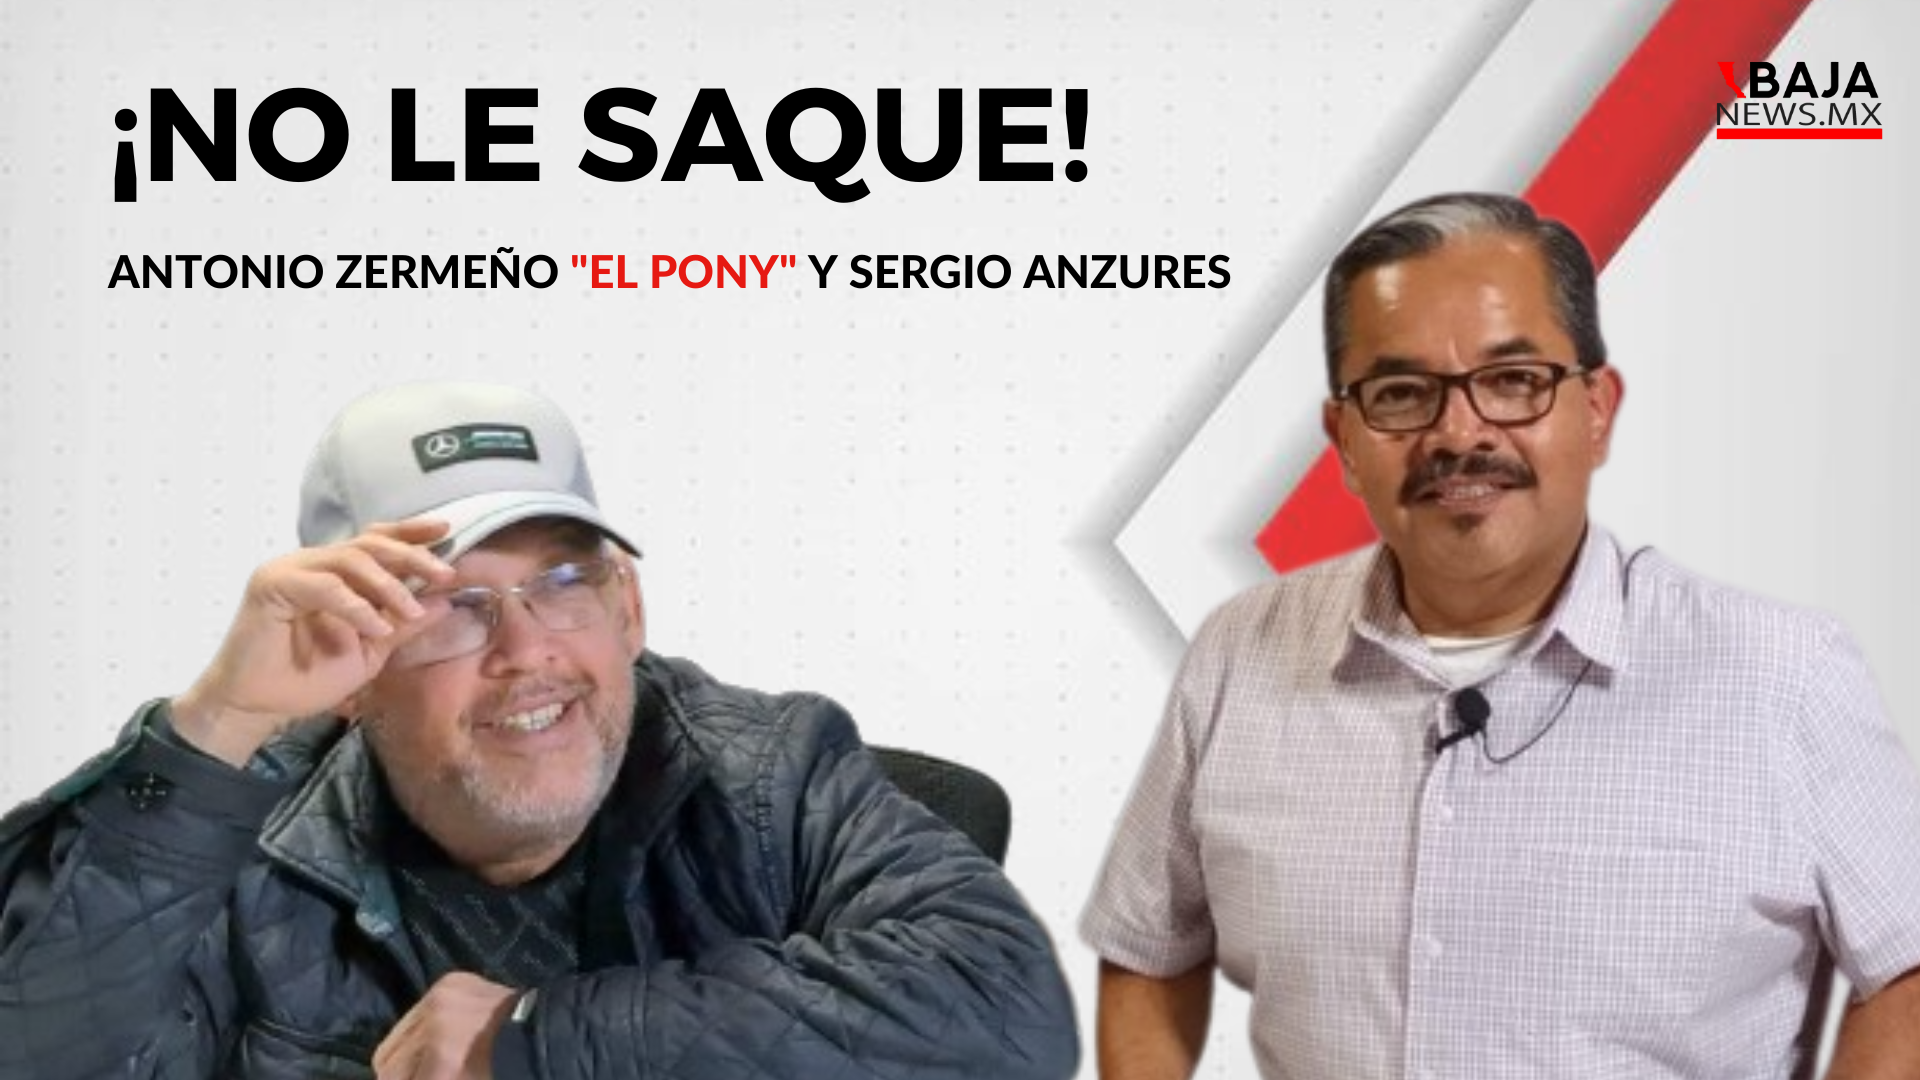 Nueva emisión del programa “No Le Saque” con Antonio Zermeño y Sergio Anzures IFOTO: Baja News